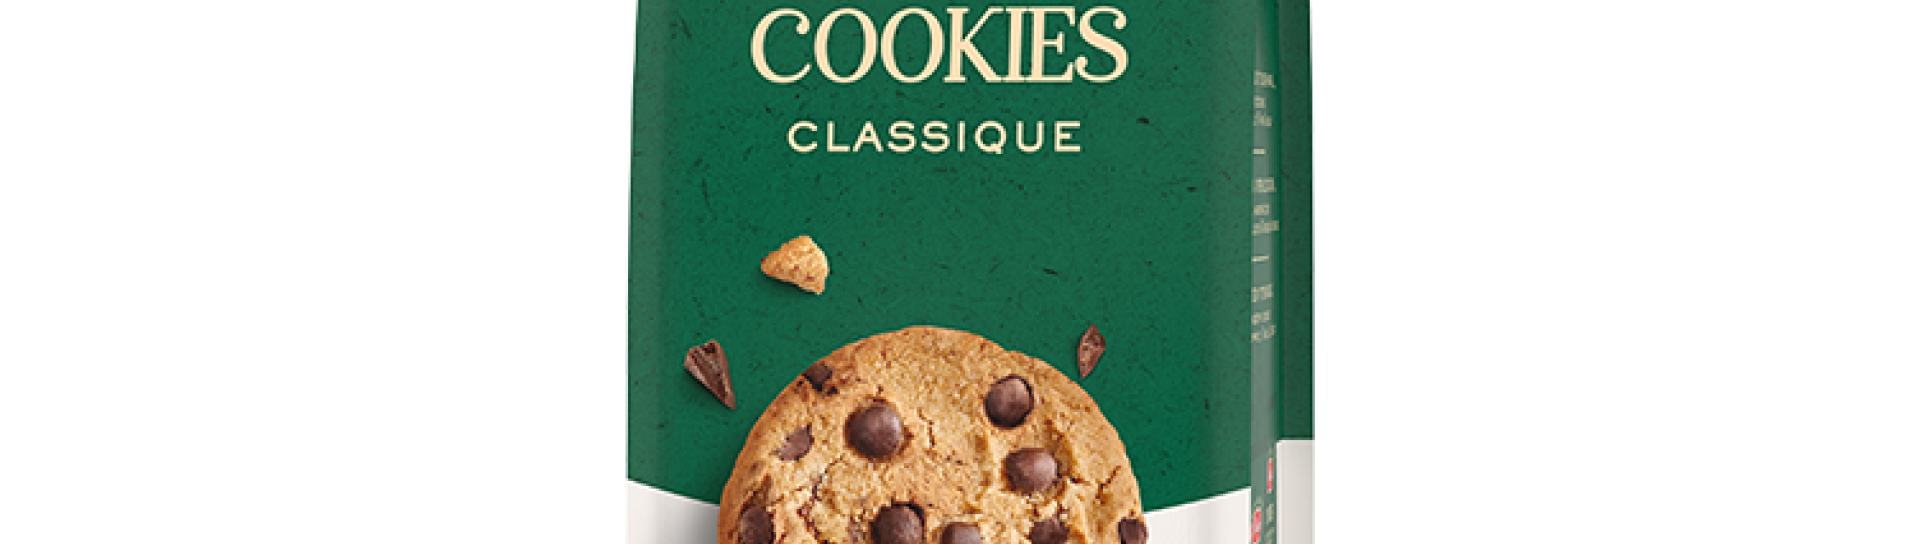 Cookies Classique